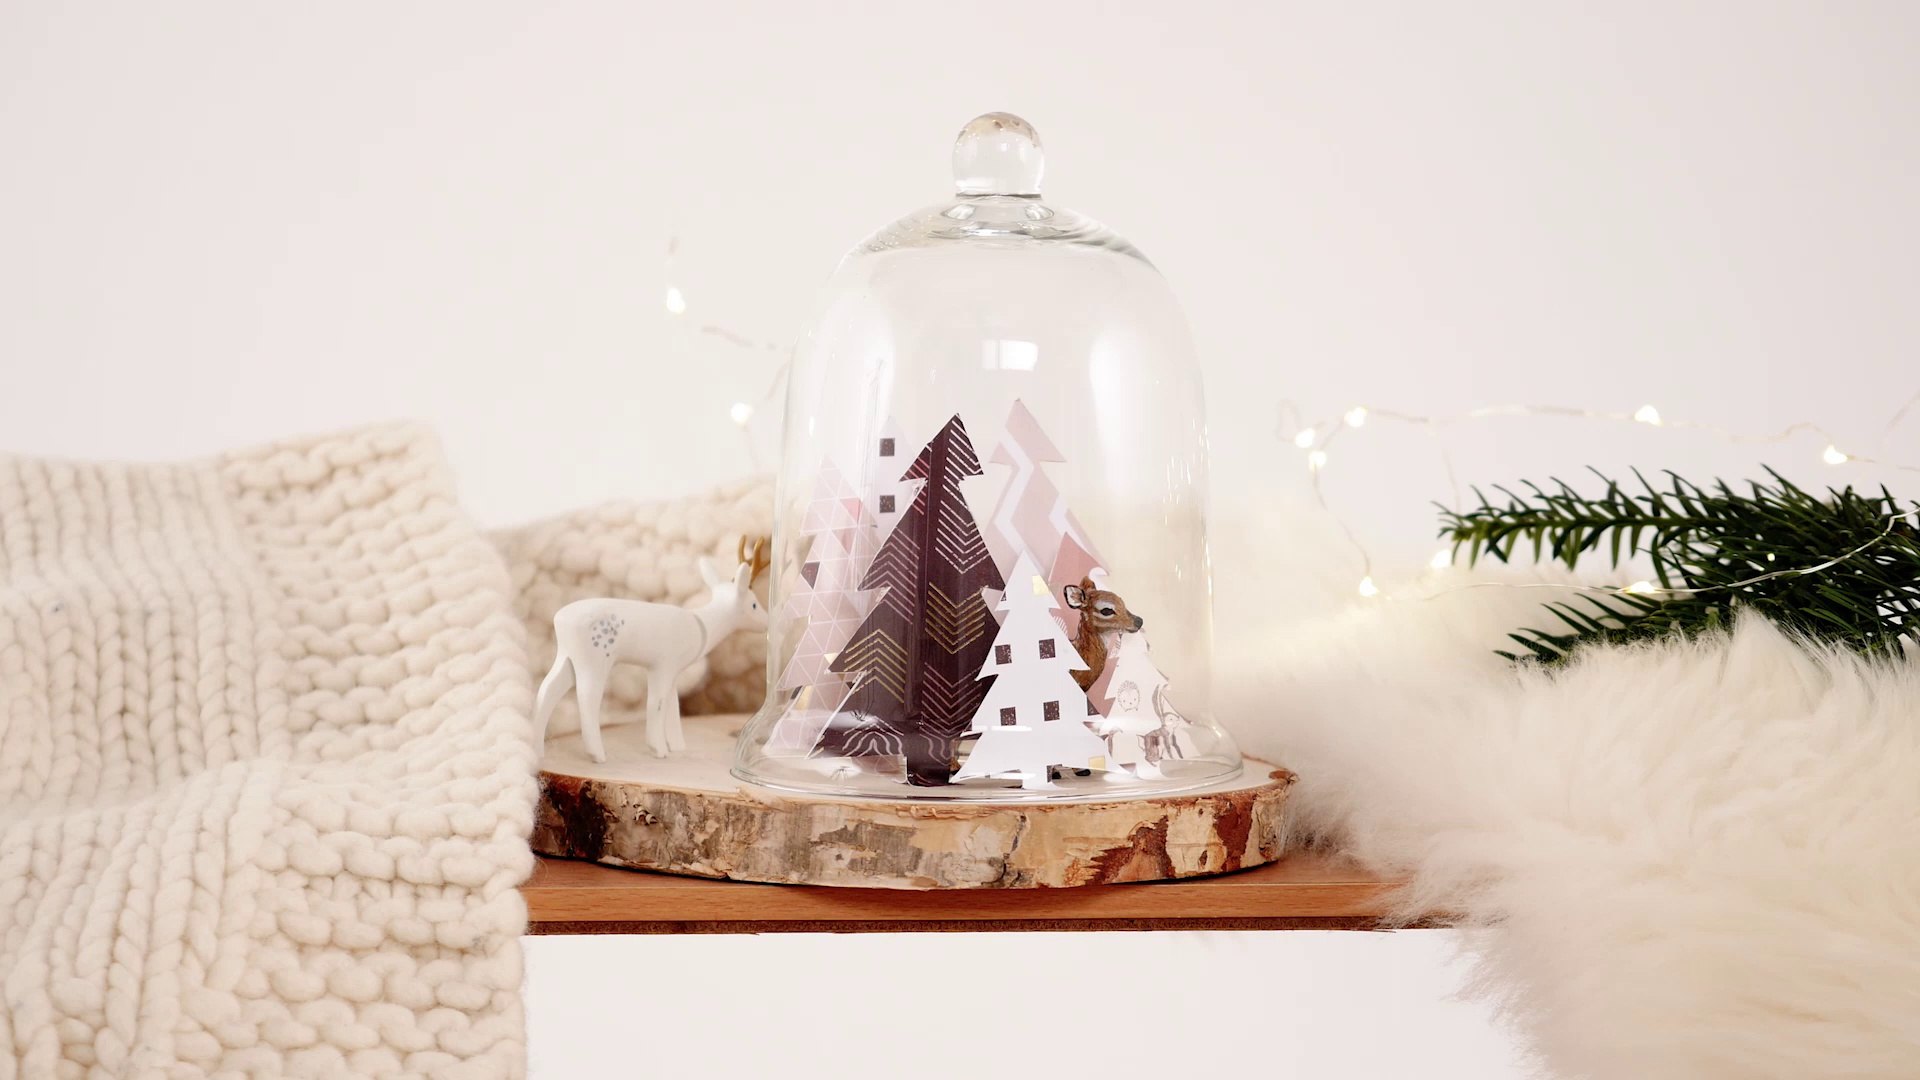 DIY Noël : faire une couronne de Noël en papier - Marie Claire